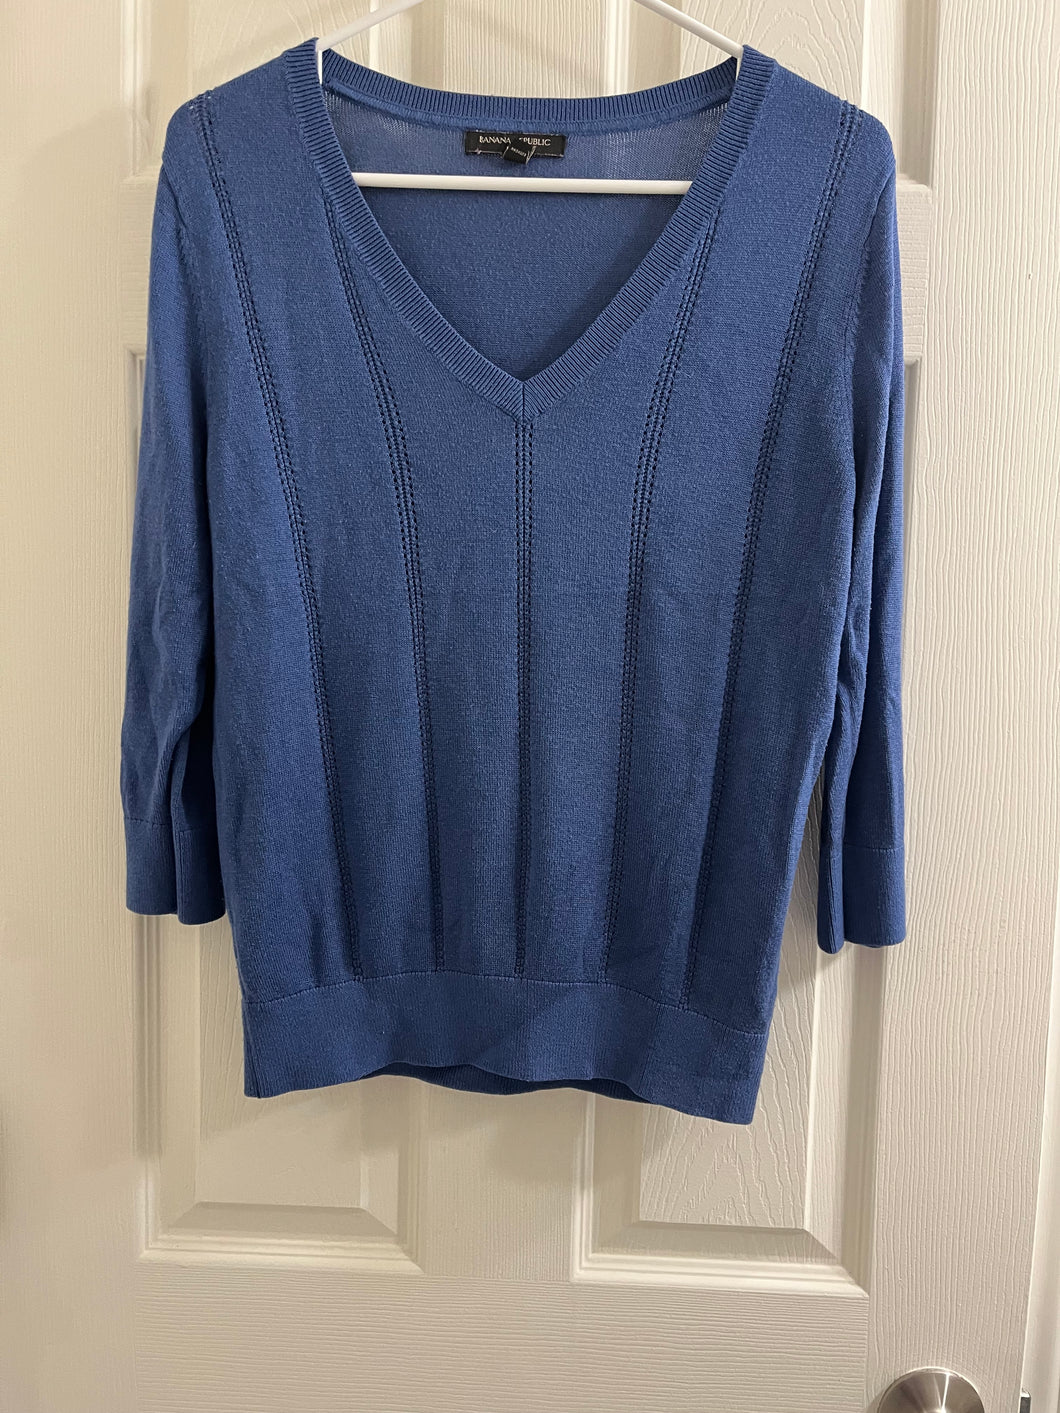 Blue 3/4 sweater - Banana Republic  Adult Medium